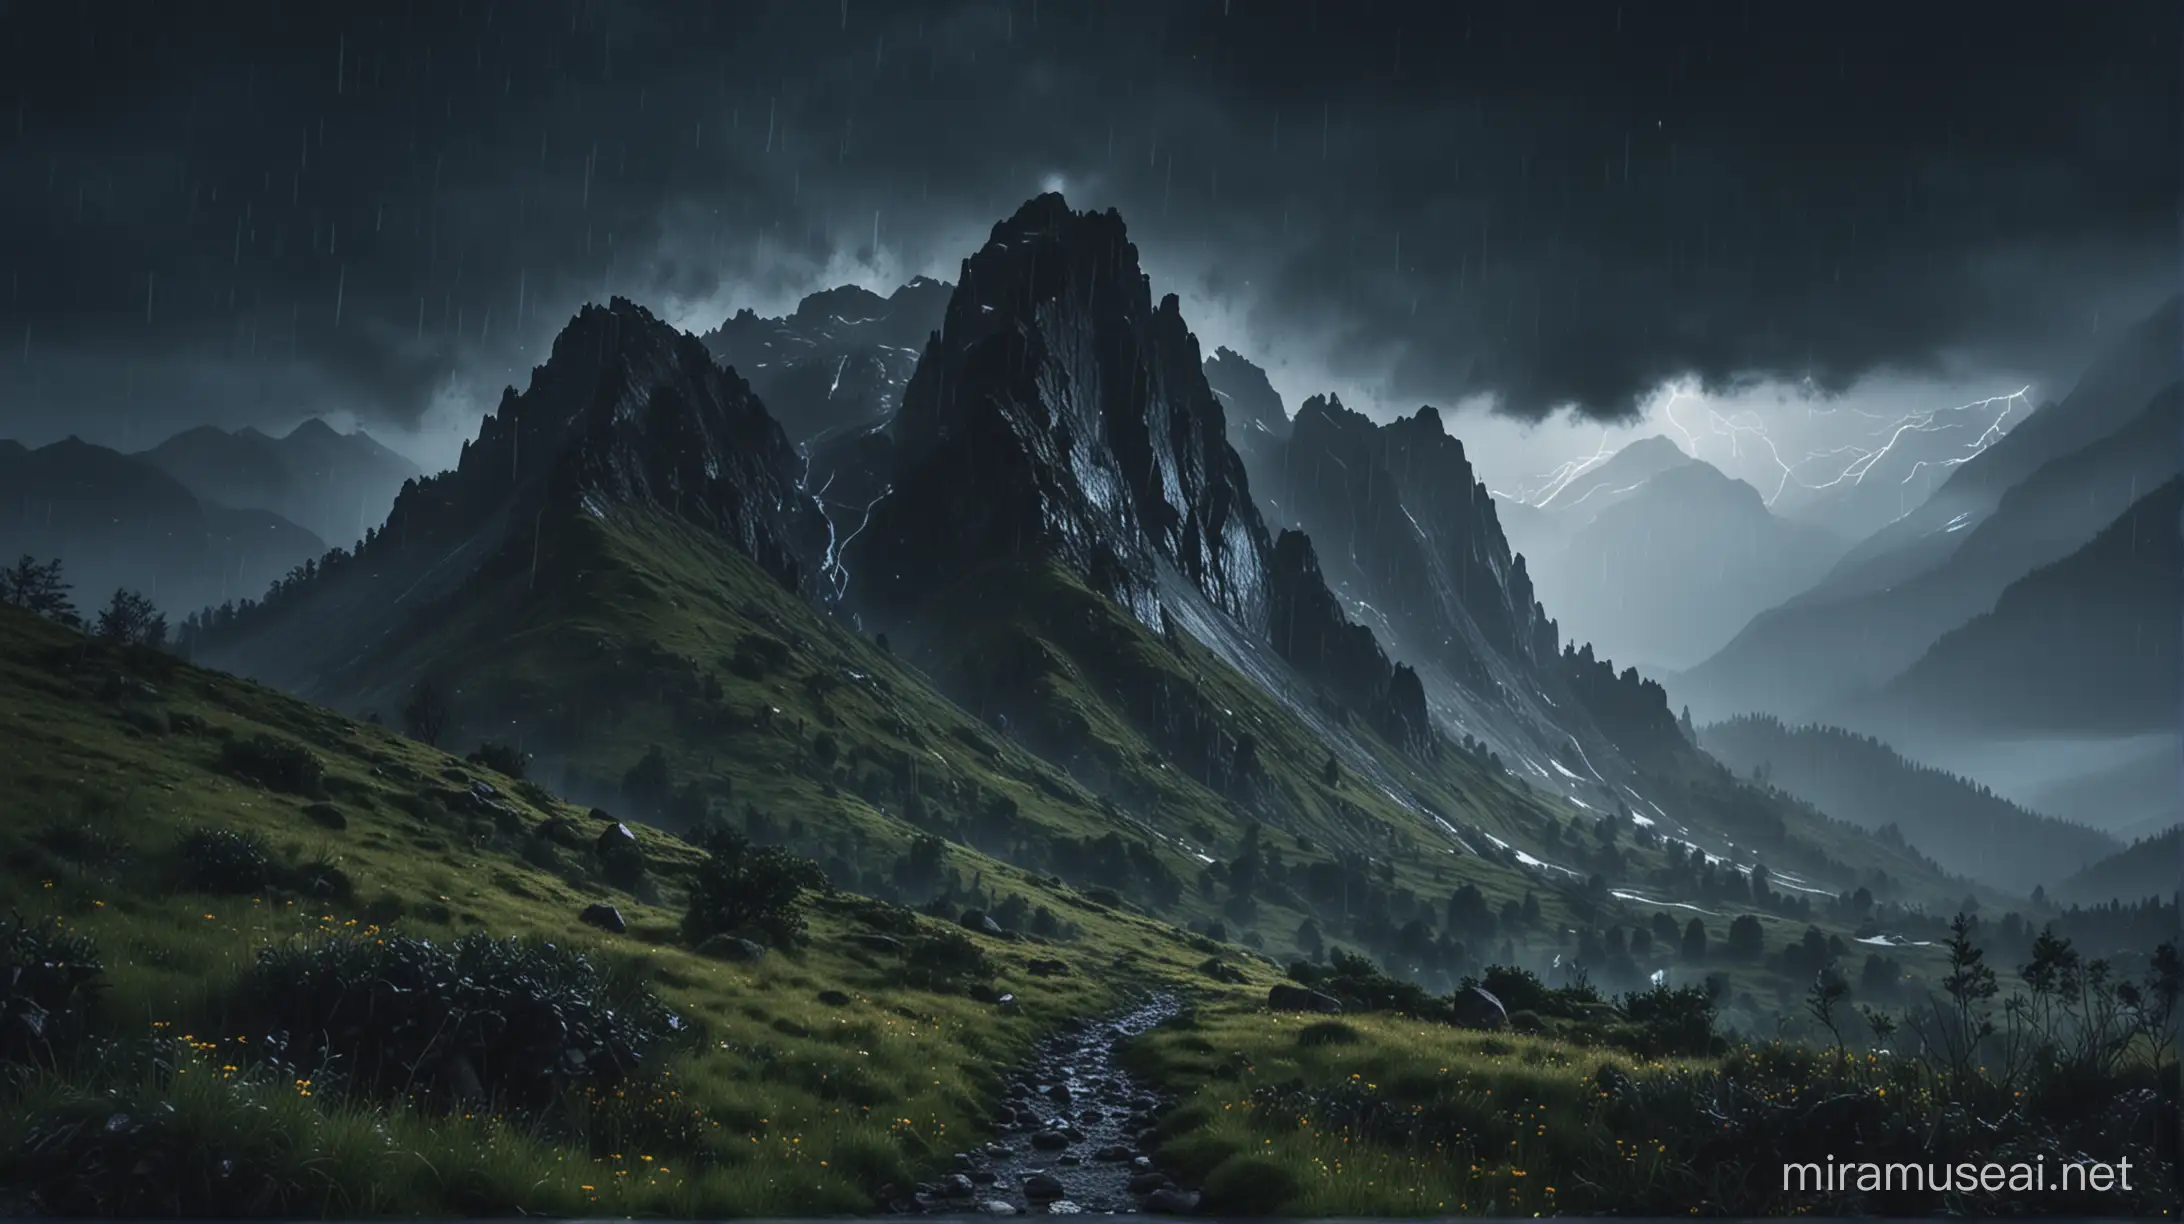 Rainy Midnight in the Mountains Serene 8K Nature Scene